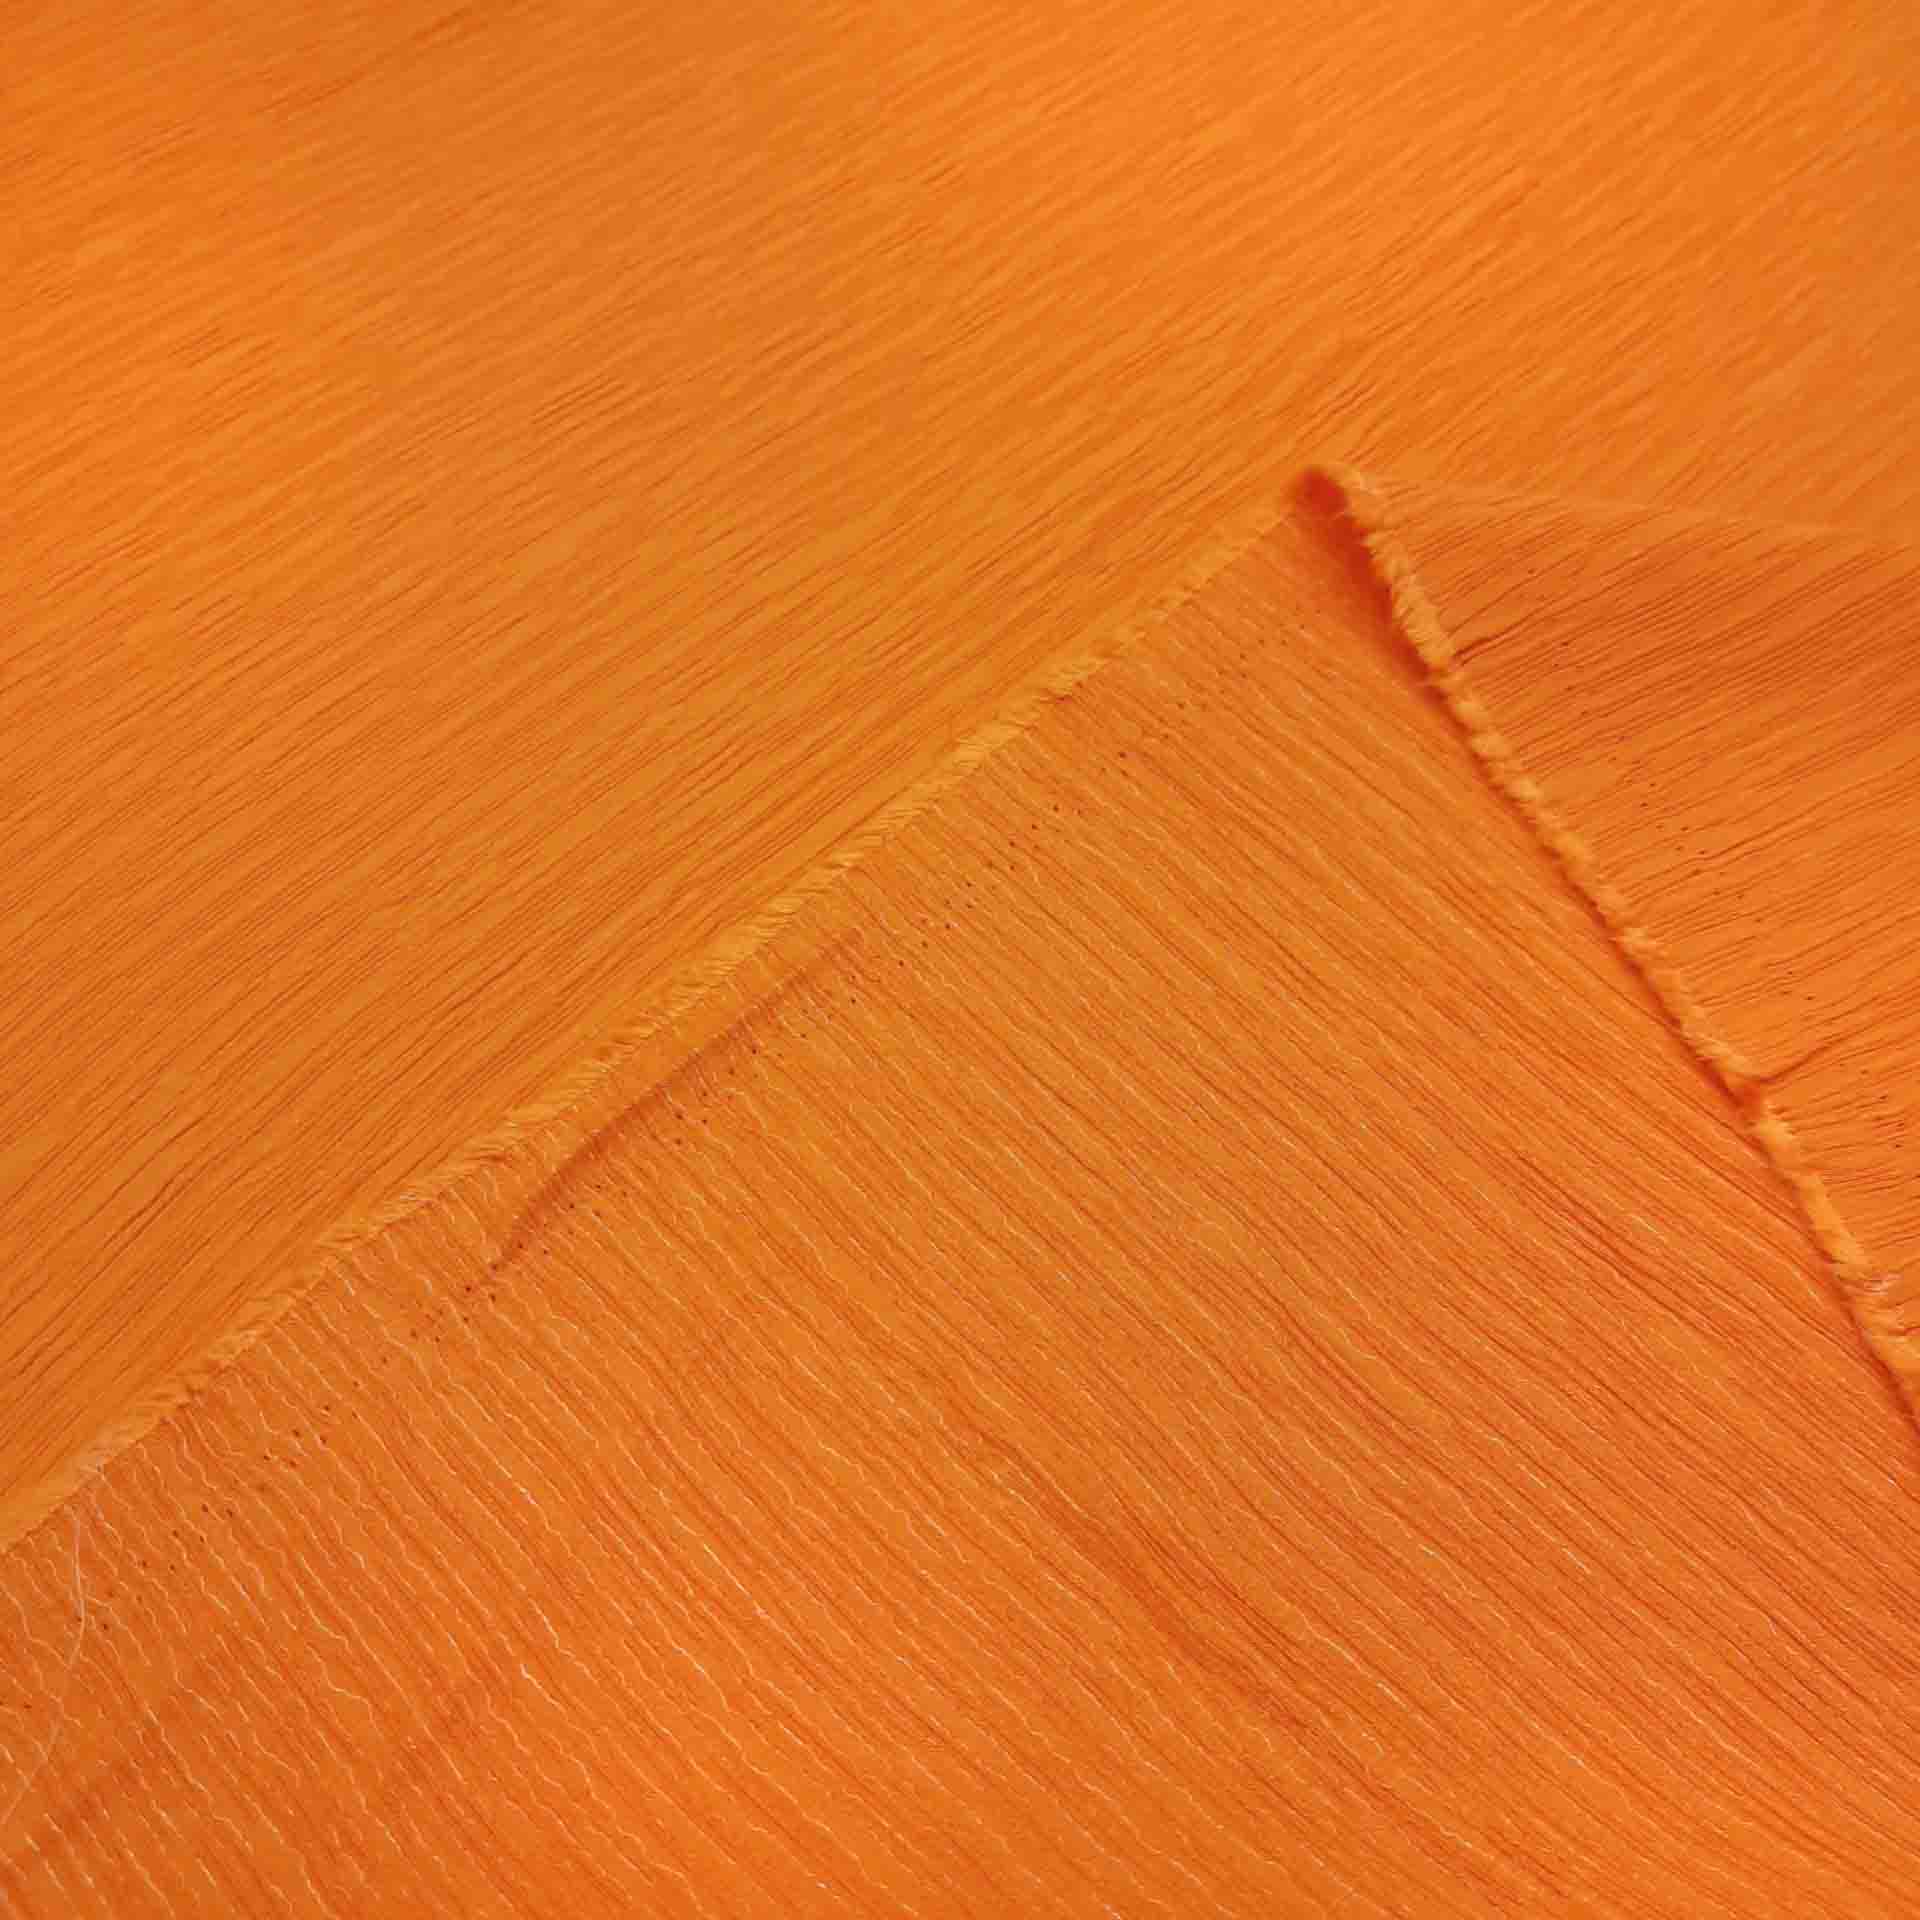 پارچه کراش لمه رنگ پرتقالی 